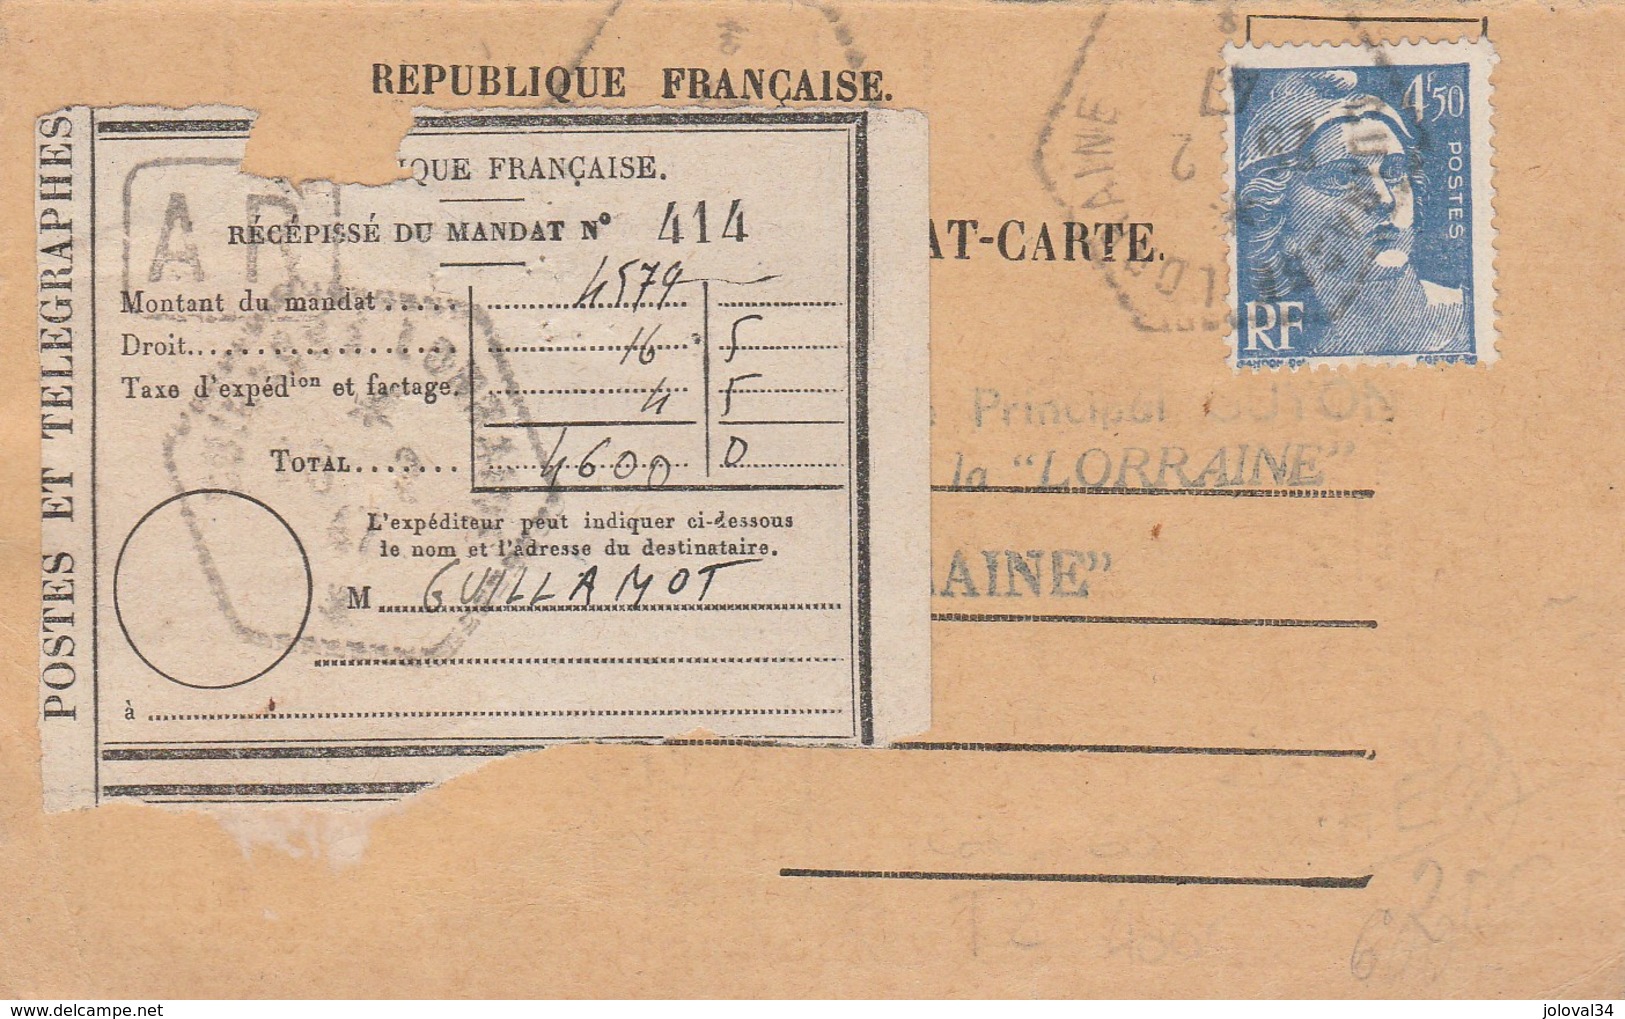 RARE Yvert 718A Gandon Sur Avis De Paiement Mandat 11/3/1947 Cachet Et Griffe CUIRASSE LORRAINE - Seepost